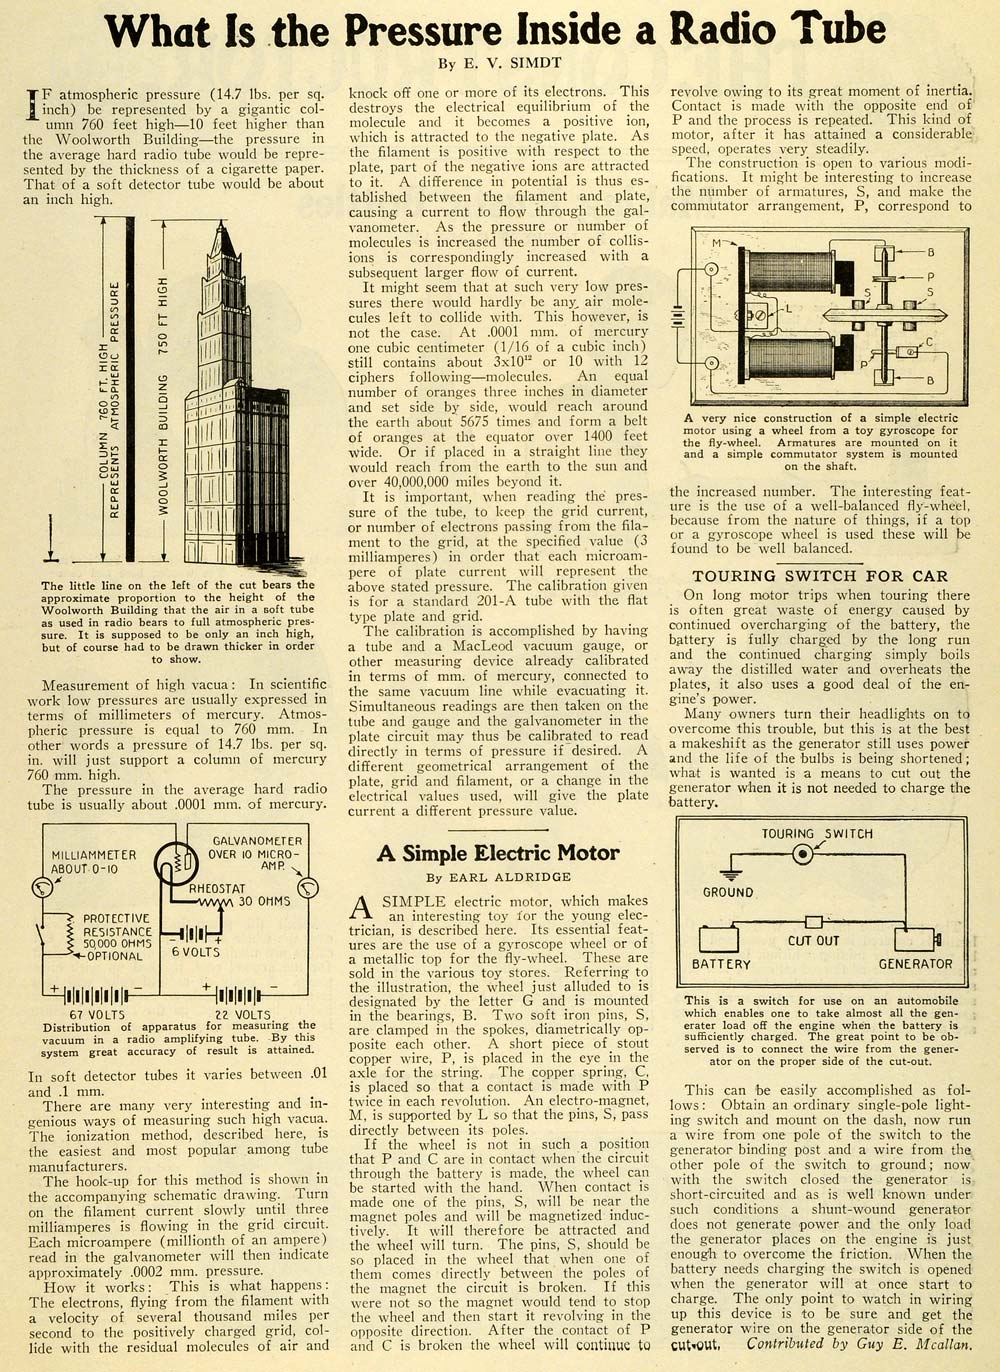 1927 Article Radio Tube Pressure Scientific Diagrams E. V. Simdt Electric SI1